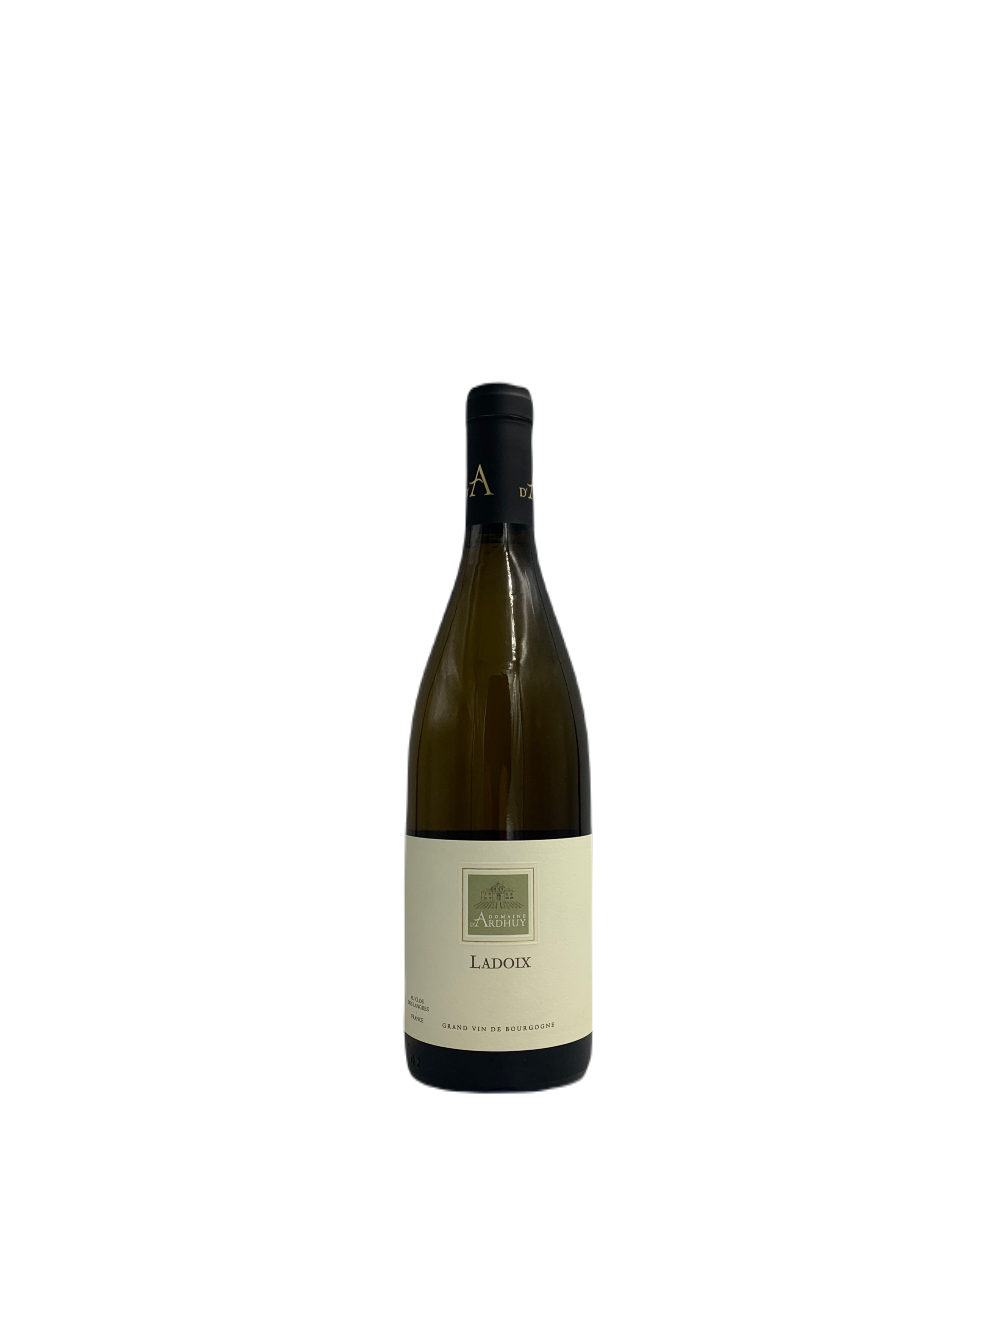 Ladoix blanc 2021 - Domaine Gabriel D'Ardhuy (Bourgogne)